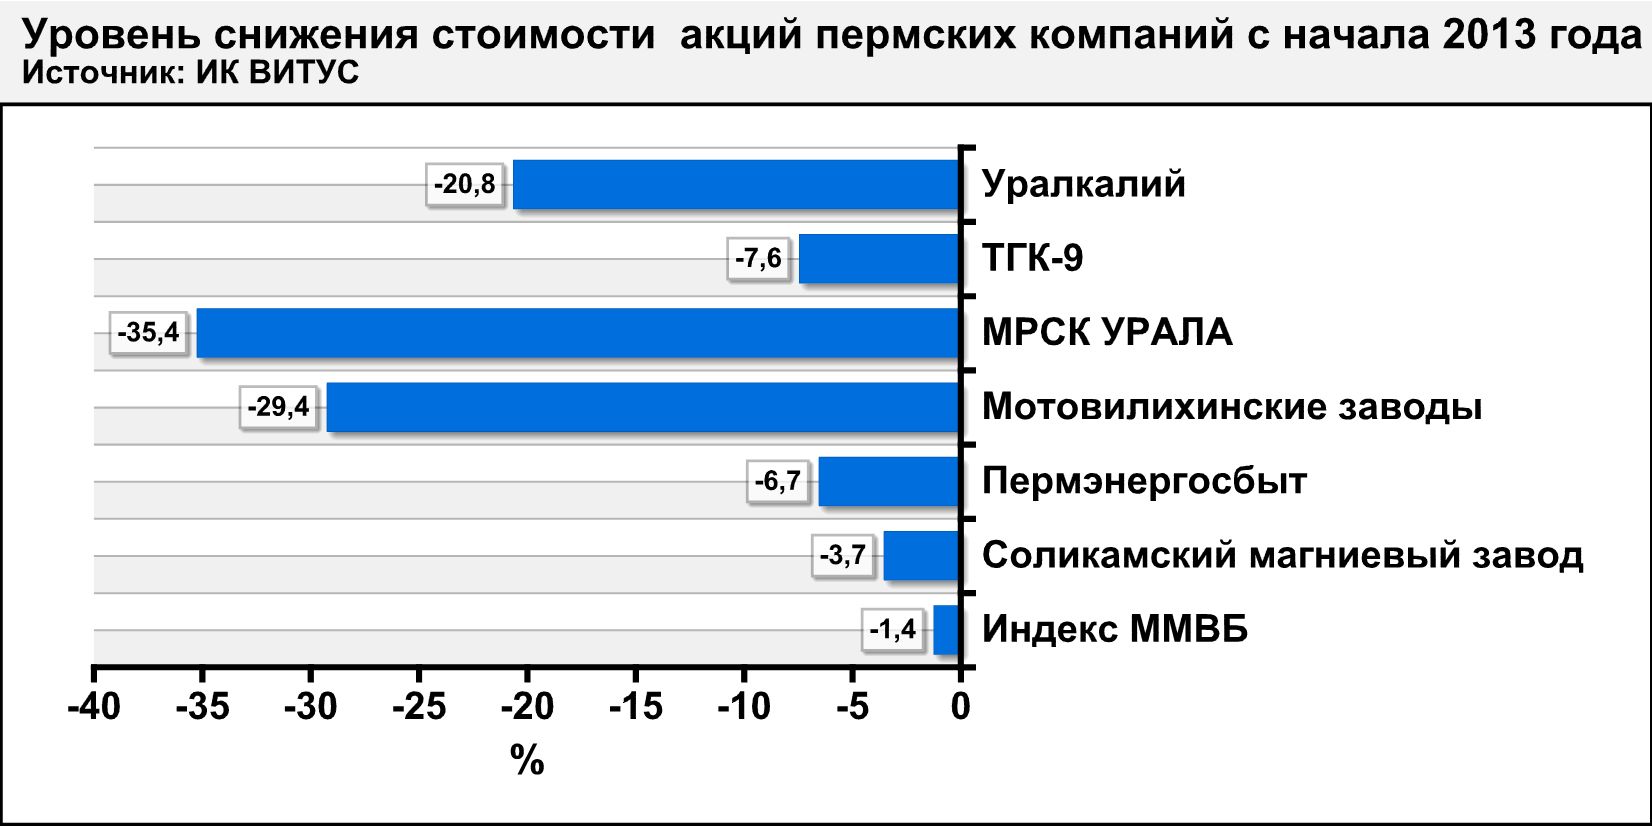 Акции пермских компаний существенно потеряли в цене с начала 2013 года